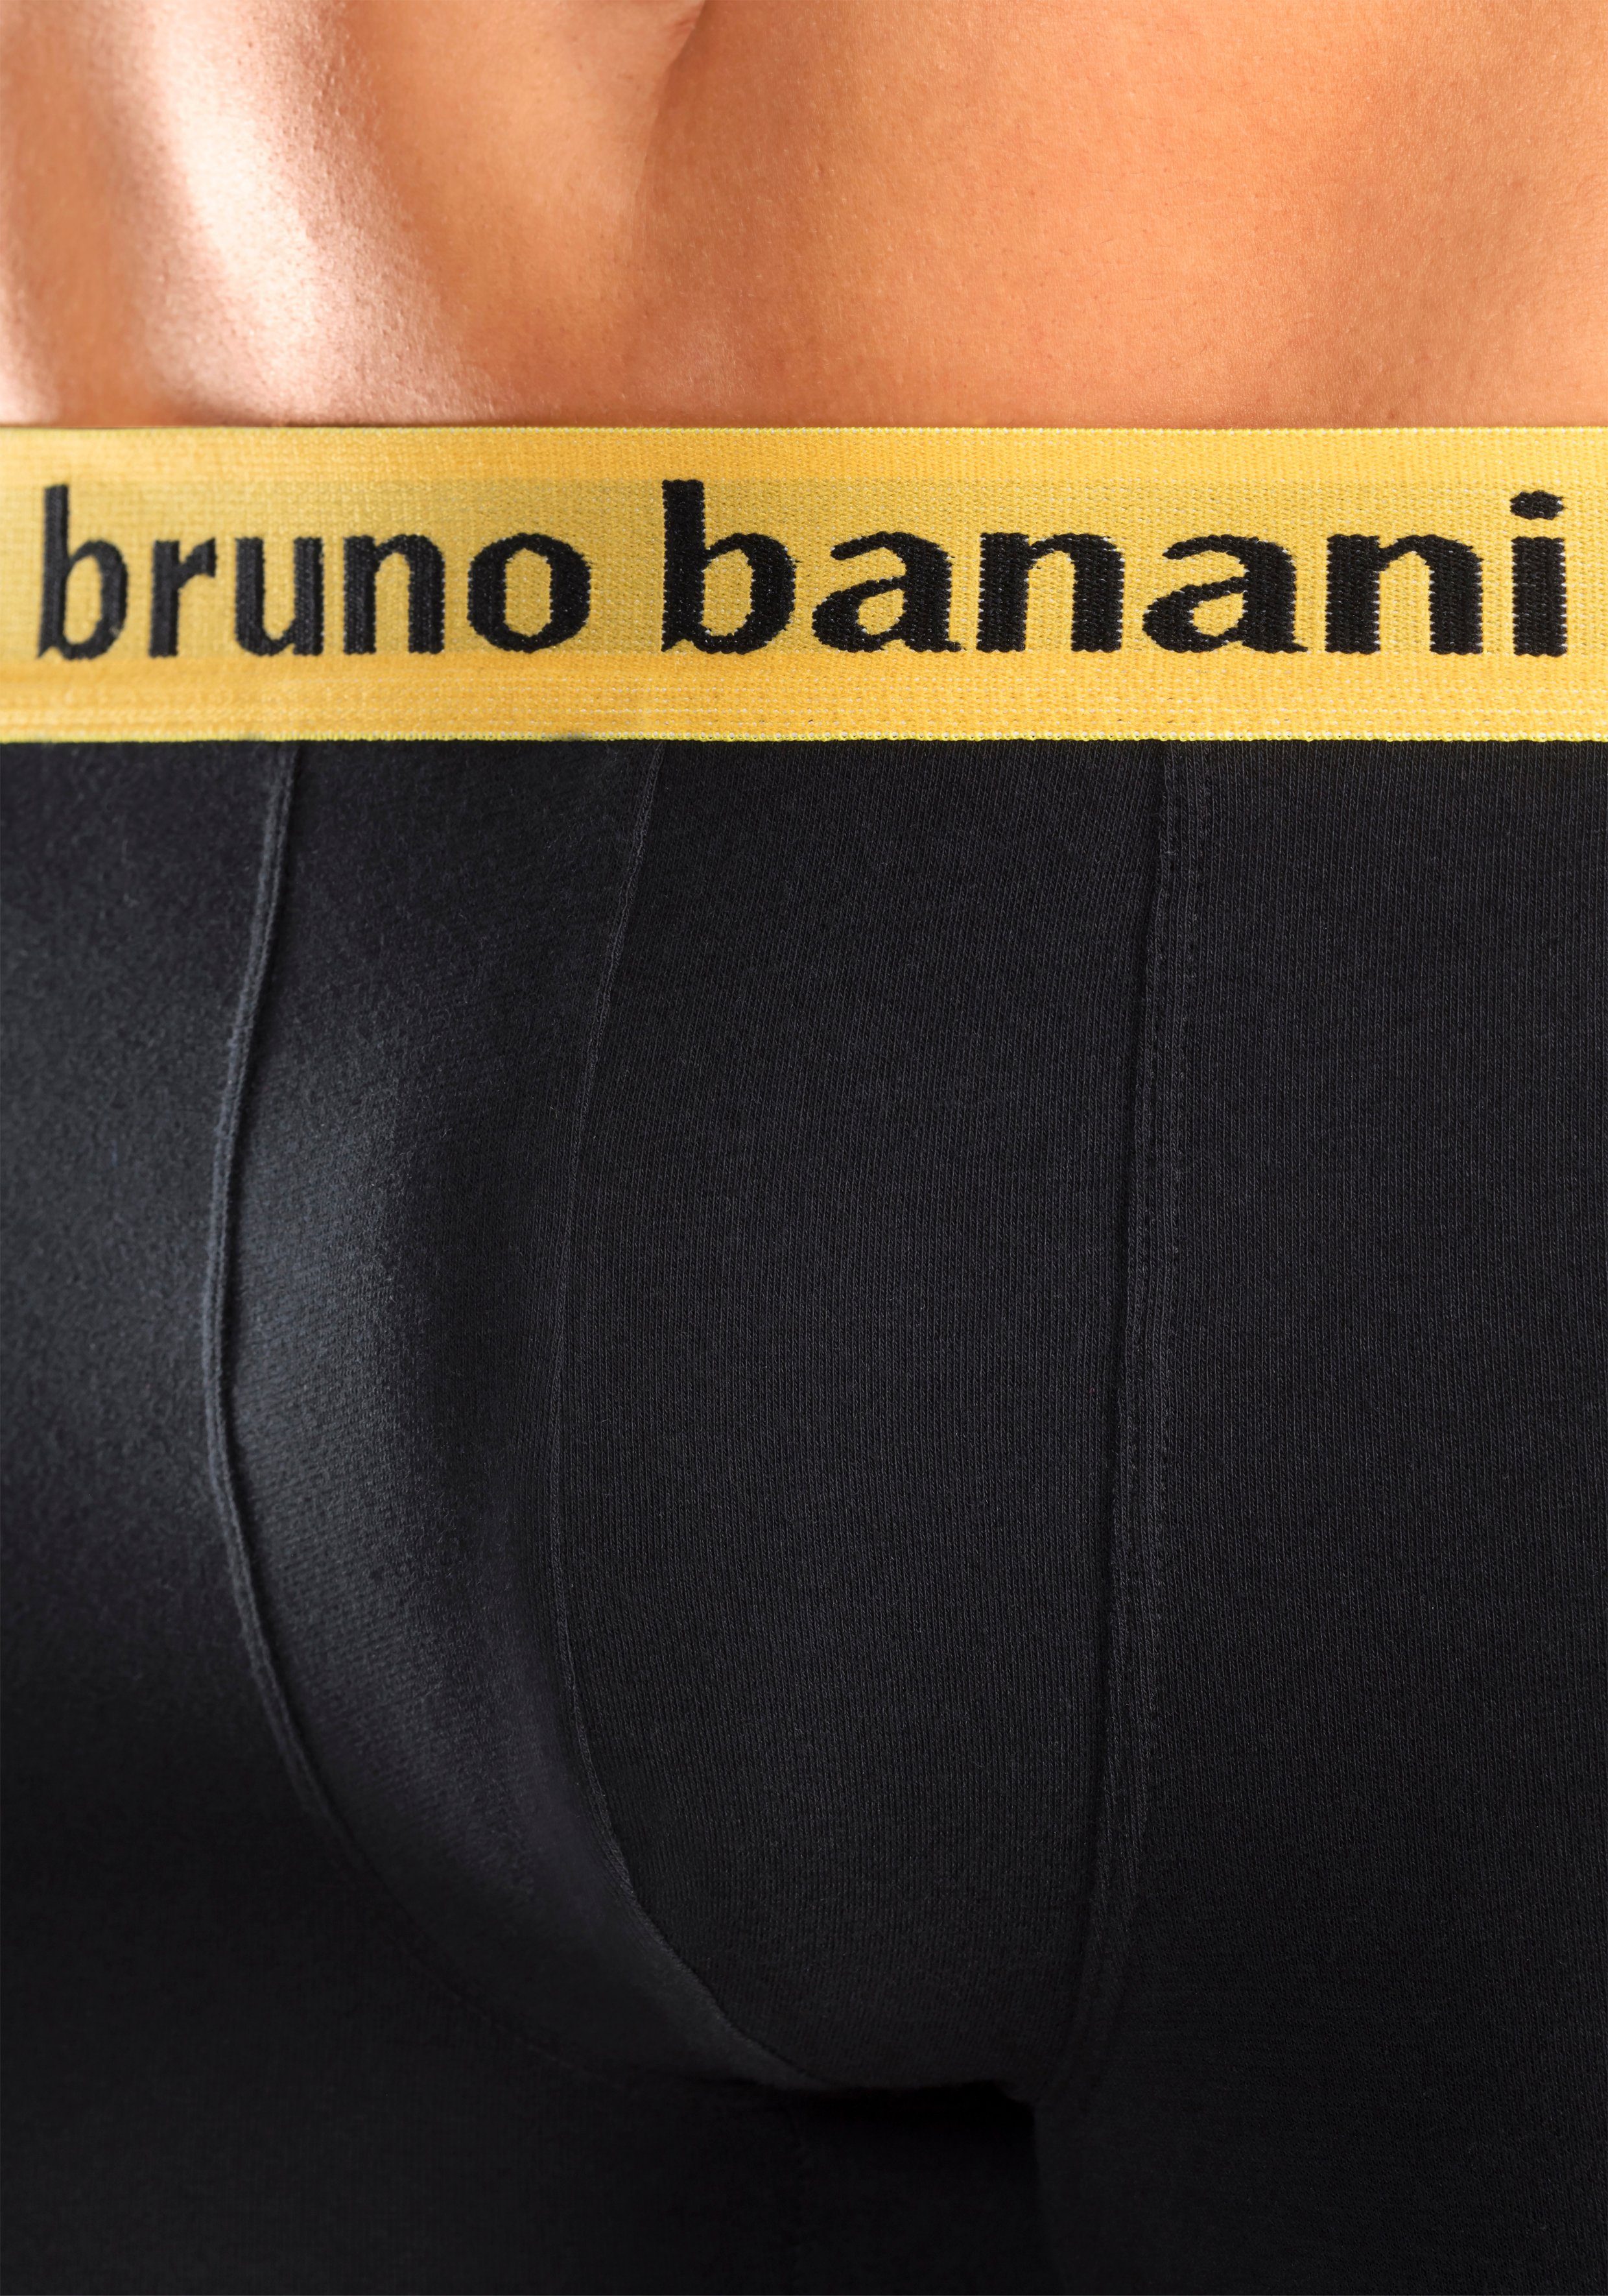 Wäsche/Bademode Unterhosen Bruno Banani Hipster (4 Stück) Mit Logo Webbund